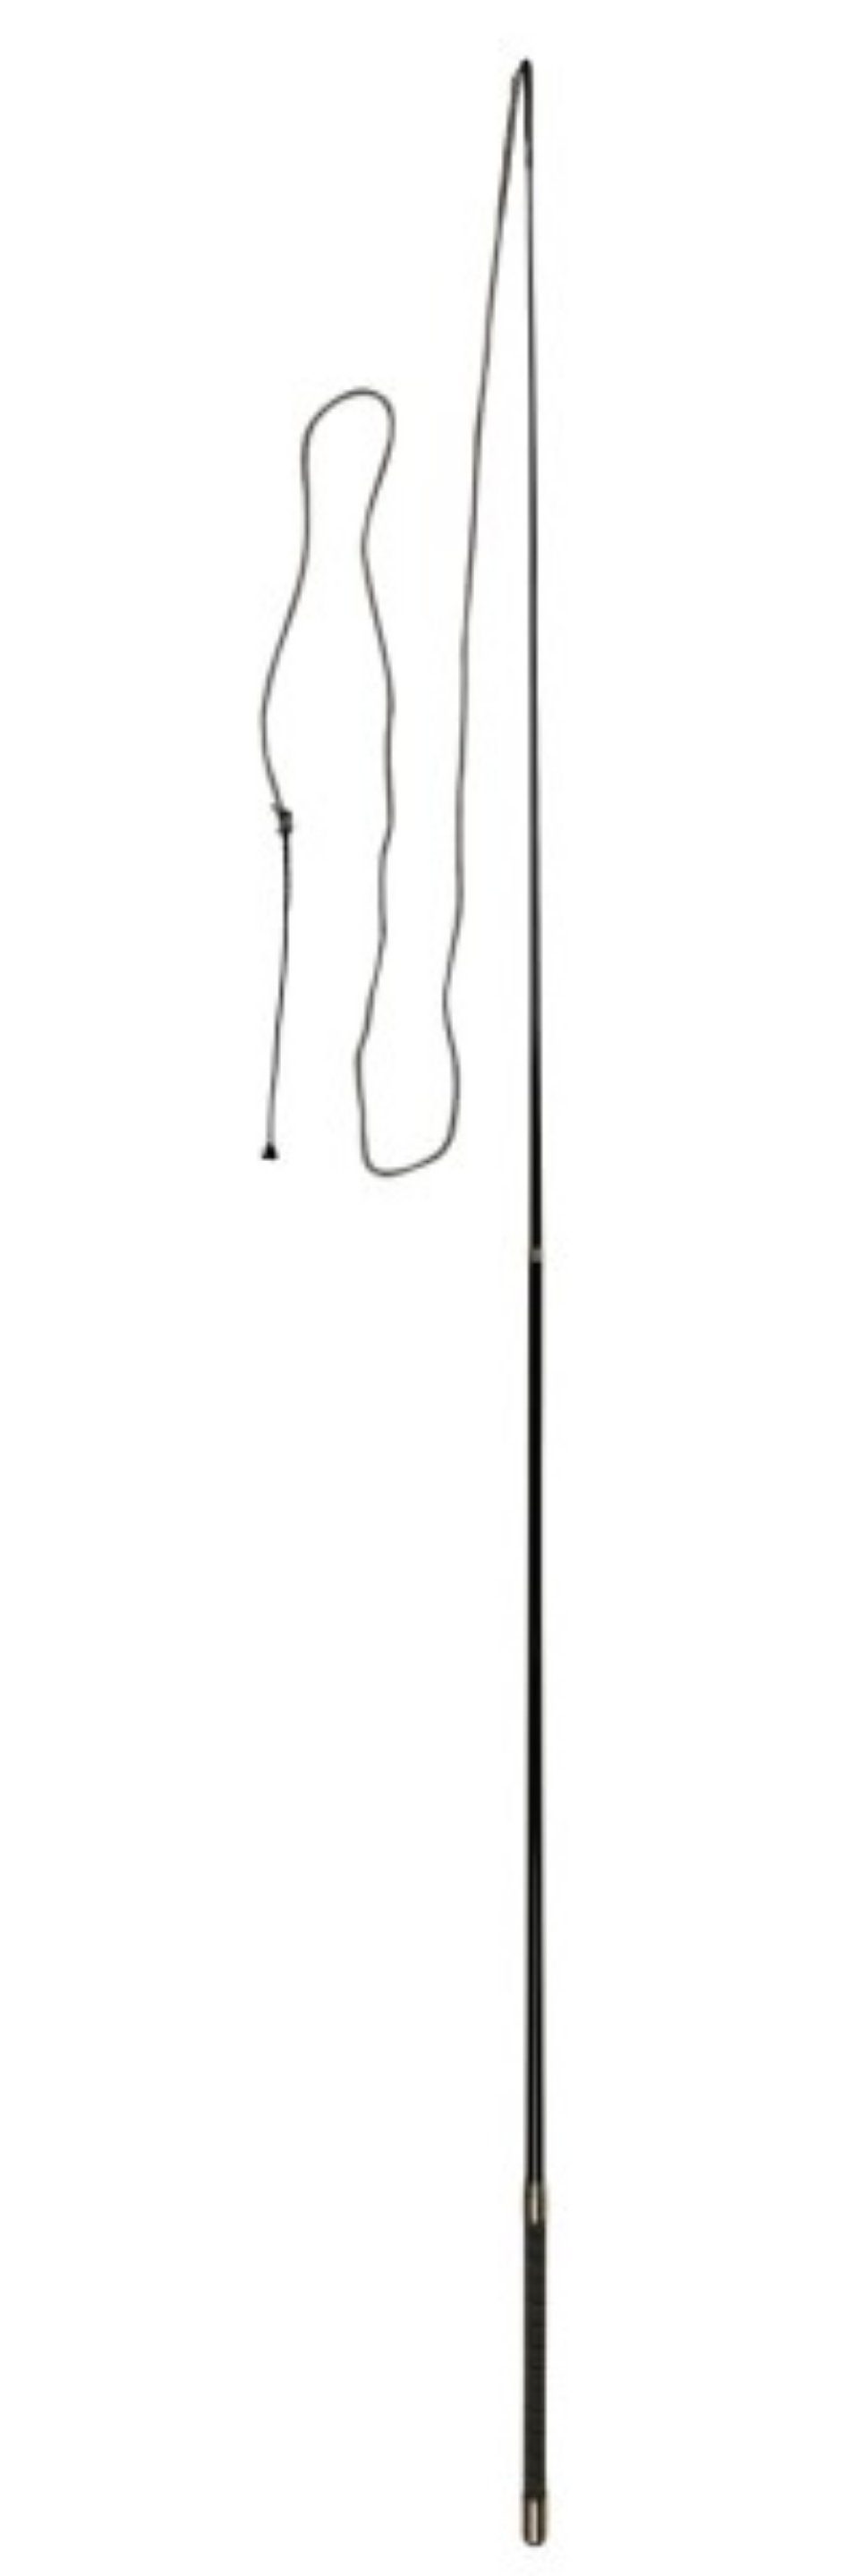 Kerbl Longierpeitsche Longierpeitsche 180 cm zweiteilig, mit Steckverbindung 32369